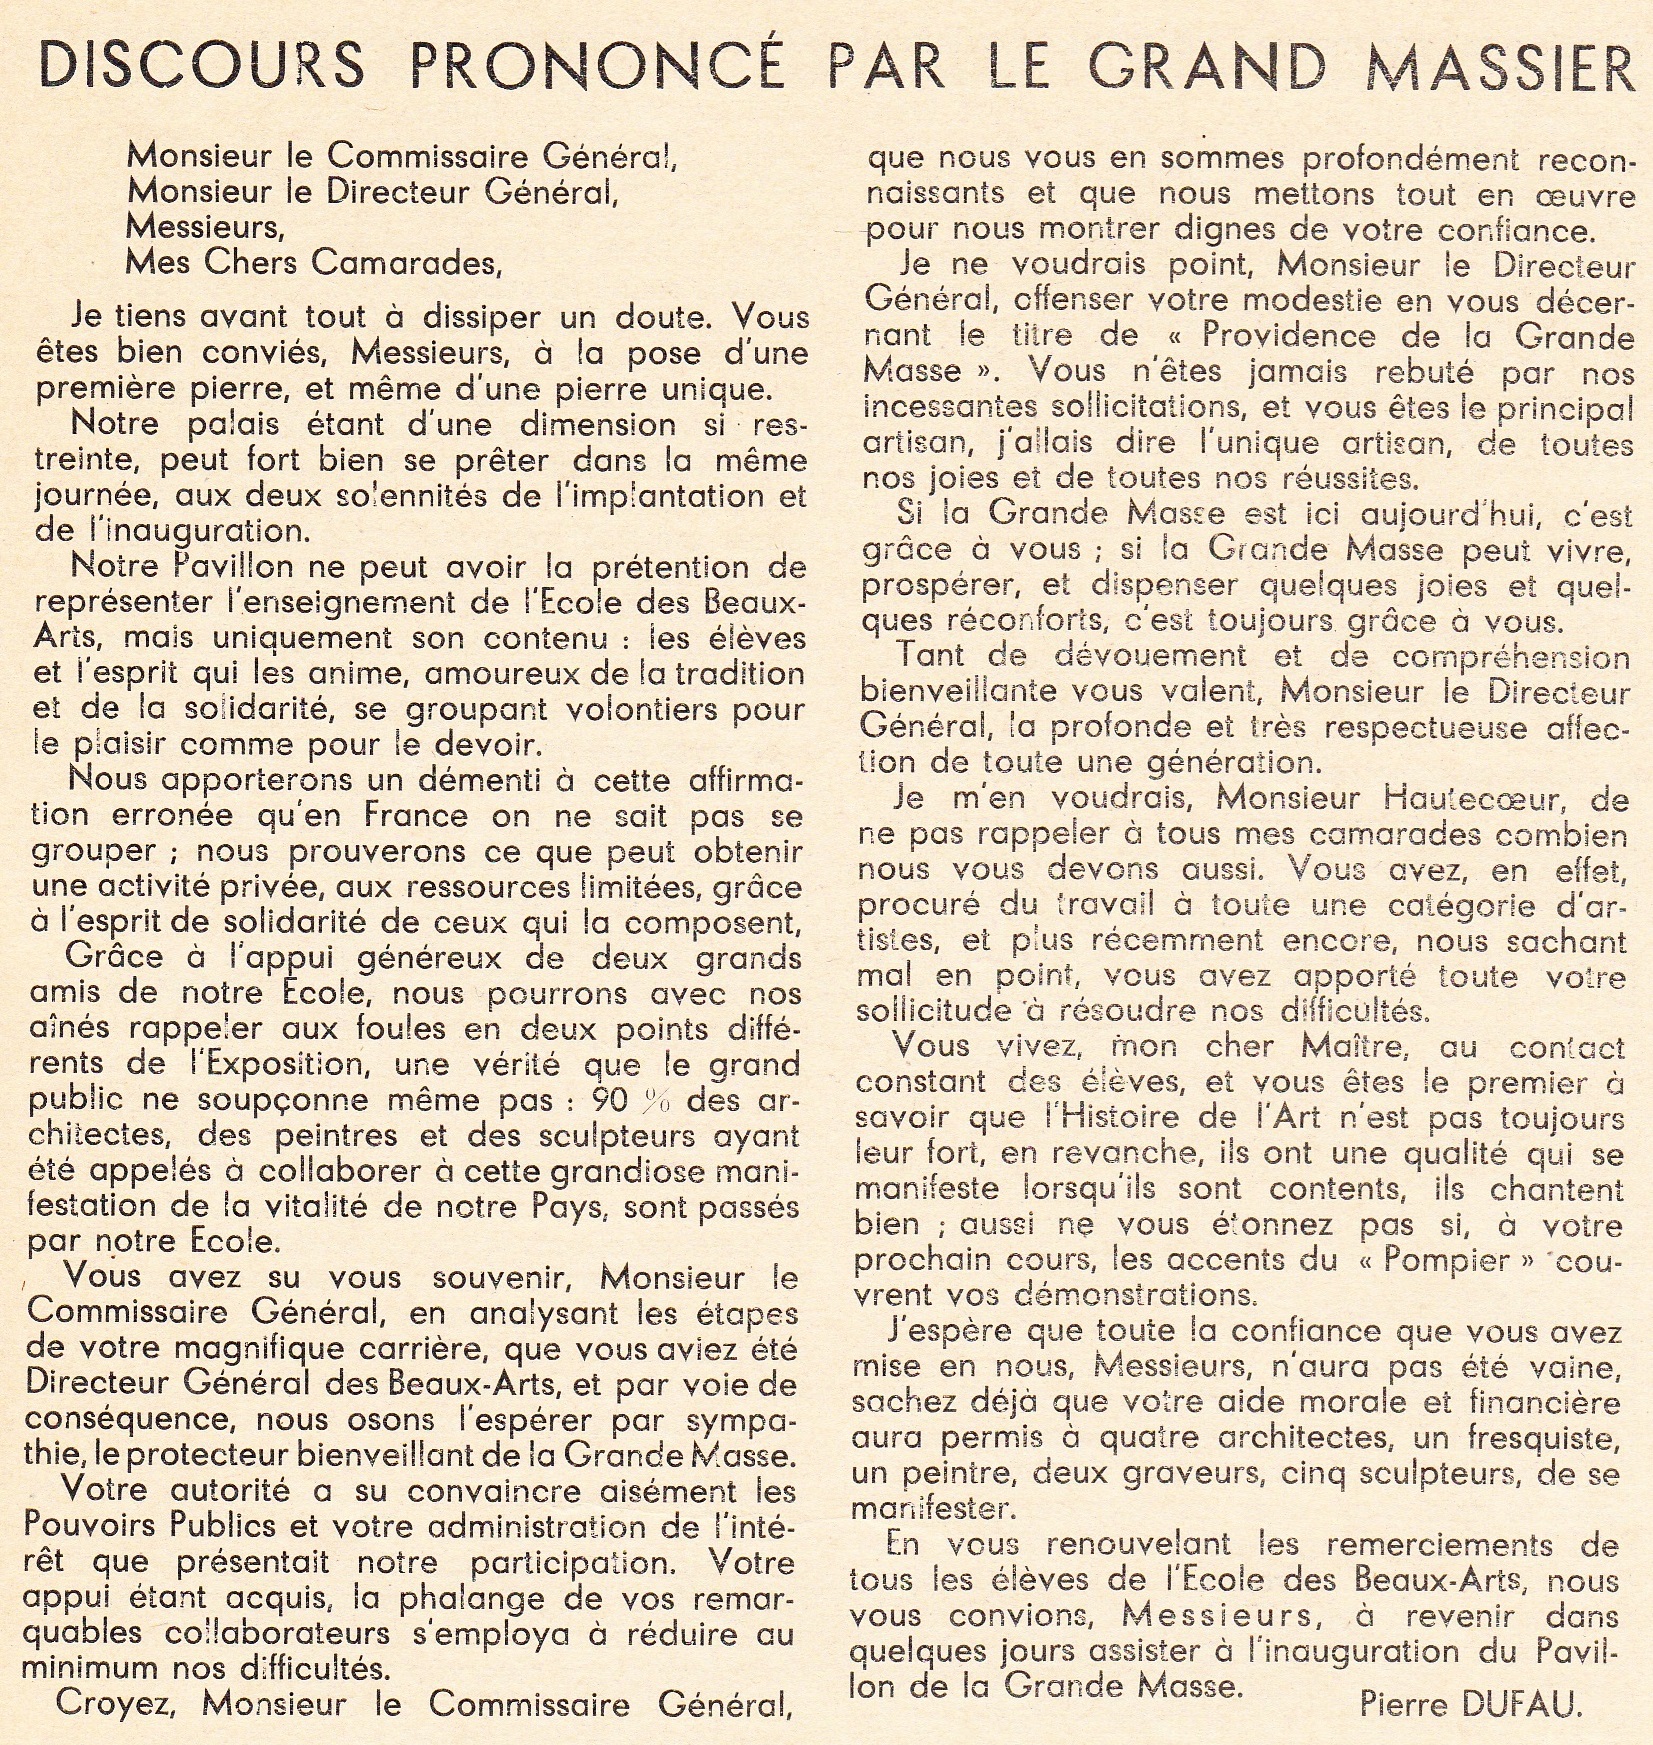 BULLETIN_193705_Discours-Grand-Massier-Pierre-DUFAU-premiere-pierre.jpg